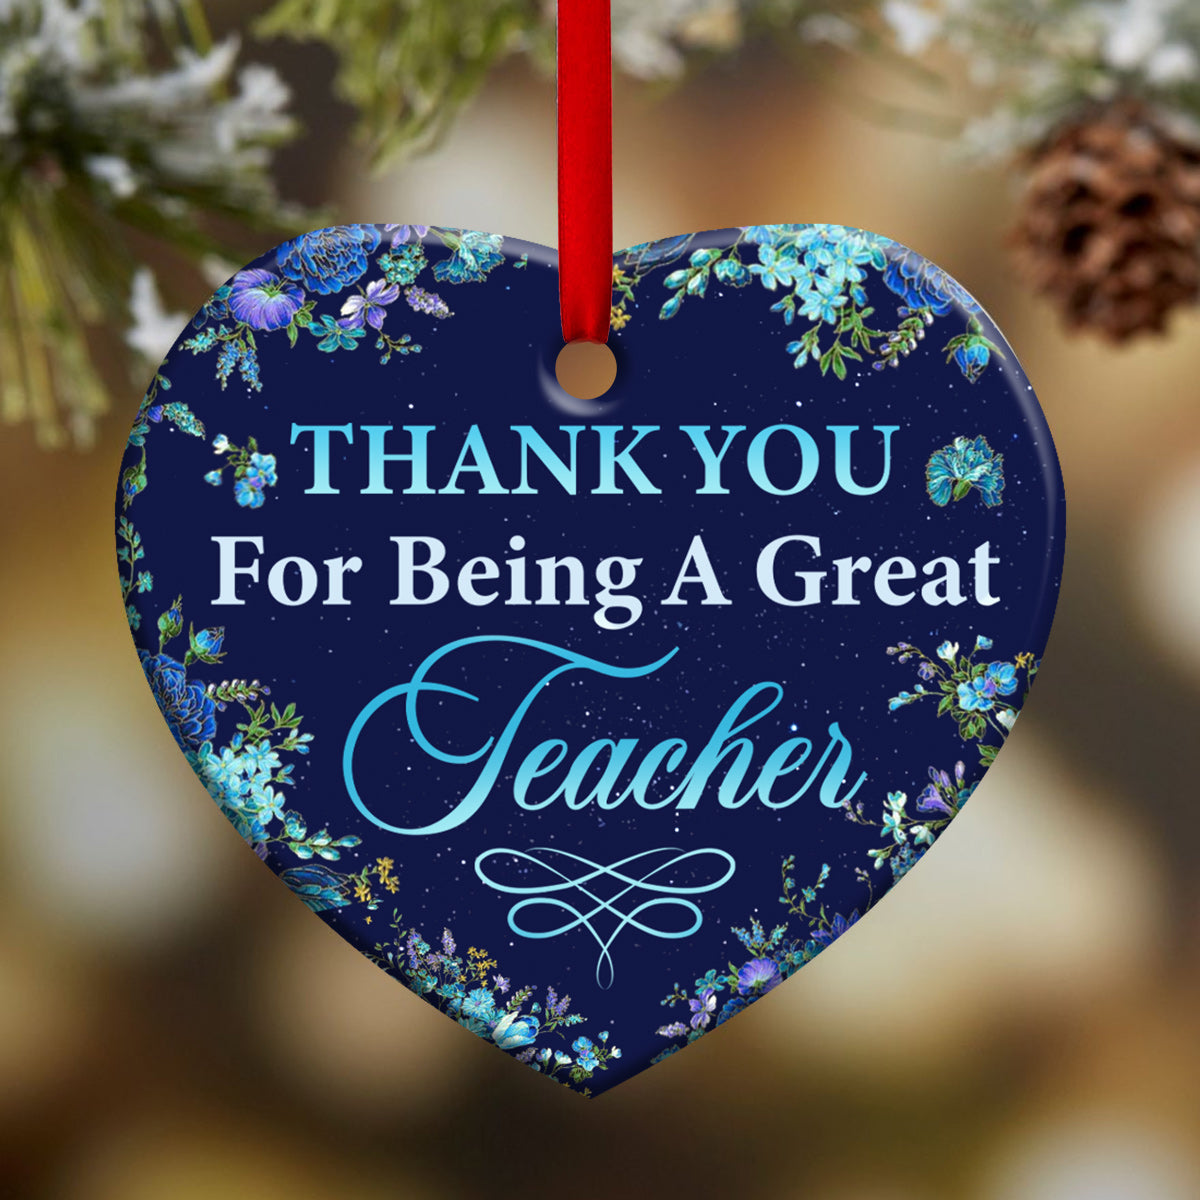 Teacher Thank You For Being A Great Teacher - Heart Ornament - Owls Matrix LTD